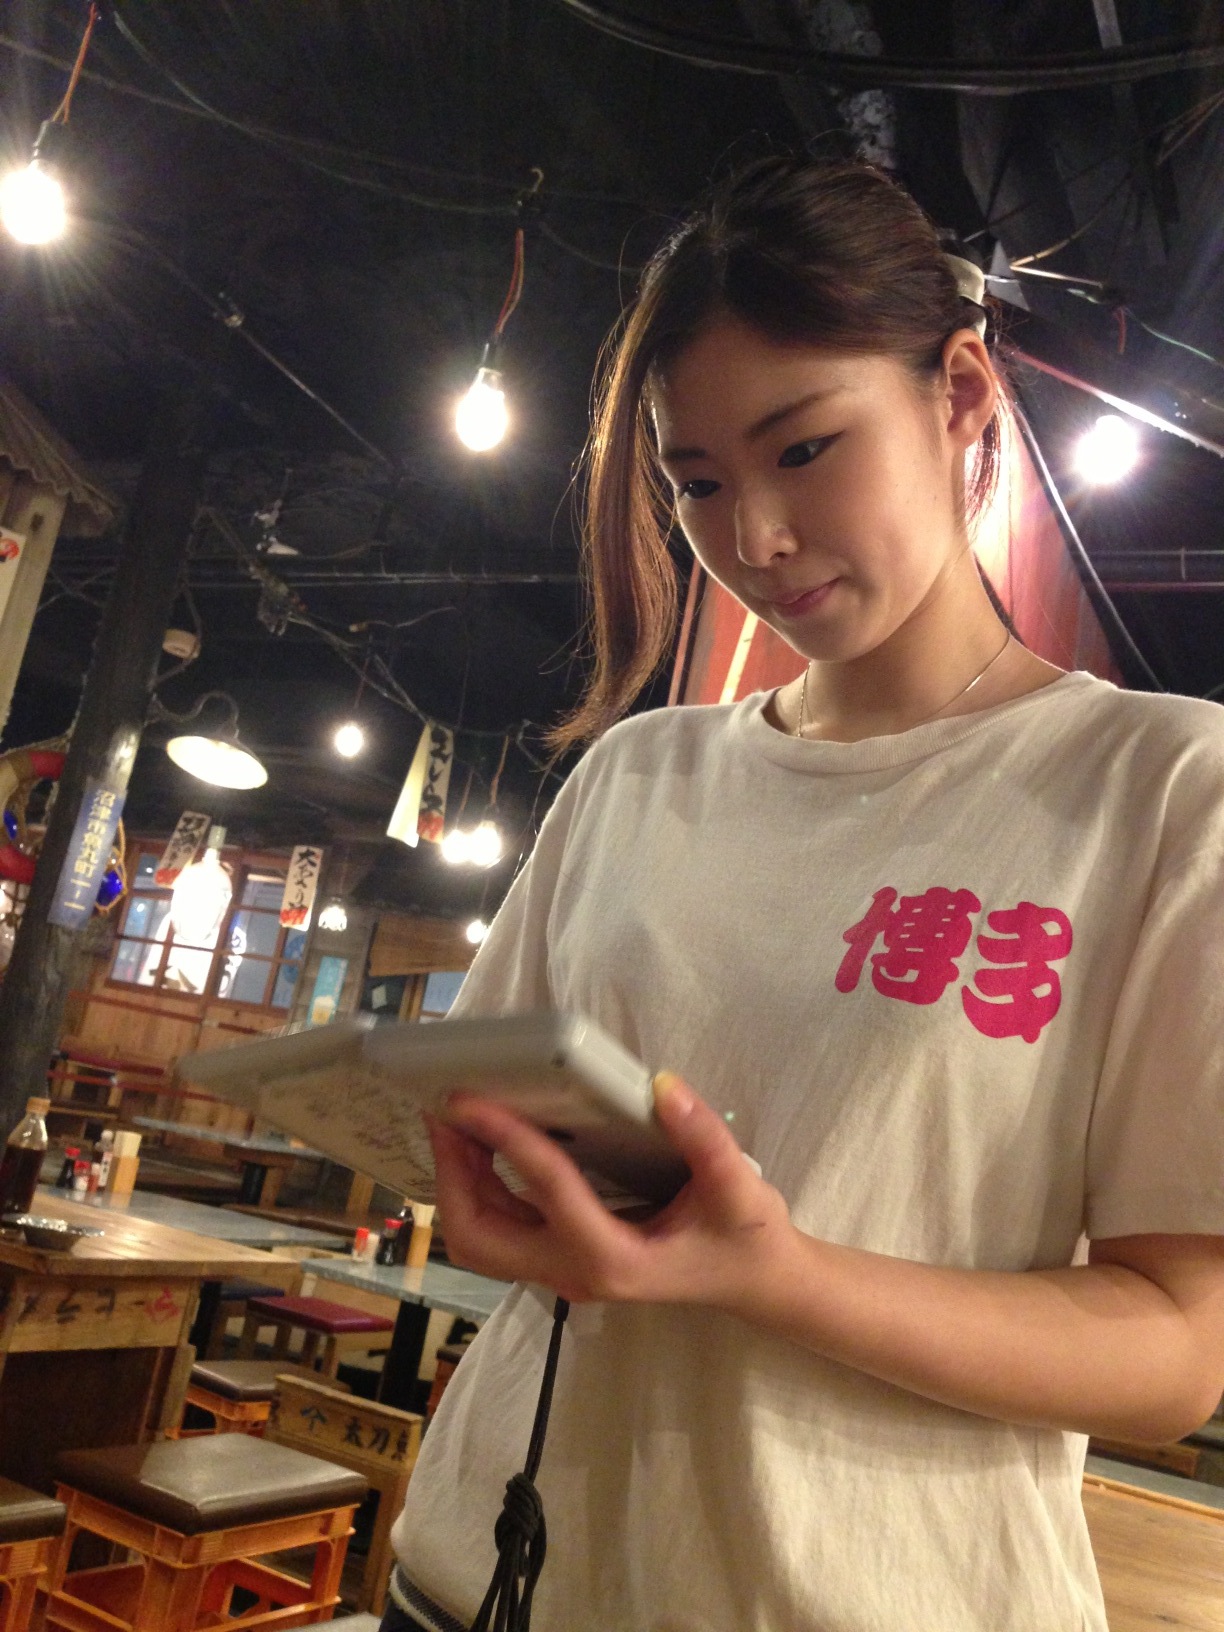 อุปนิสัยการบริการของพนักงานร้านอาหารที่ญี่ปุ่น